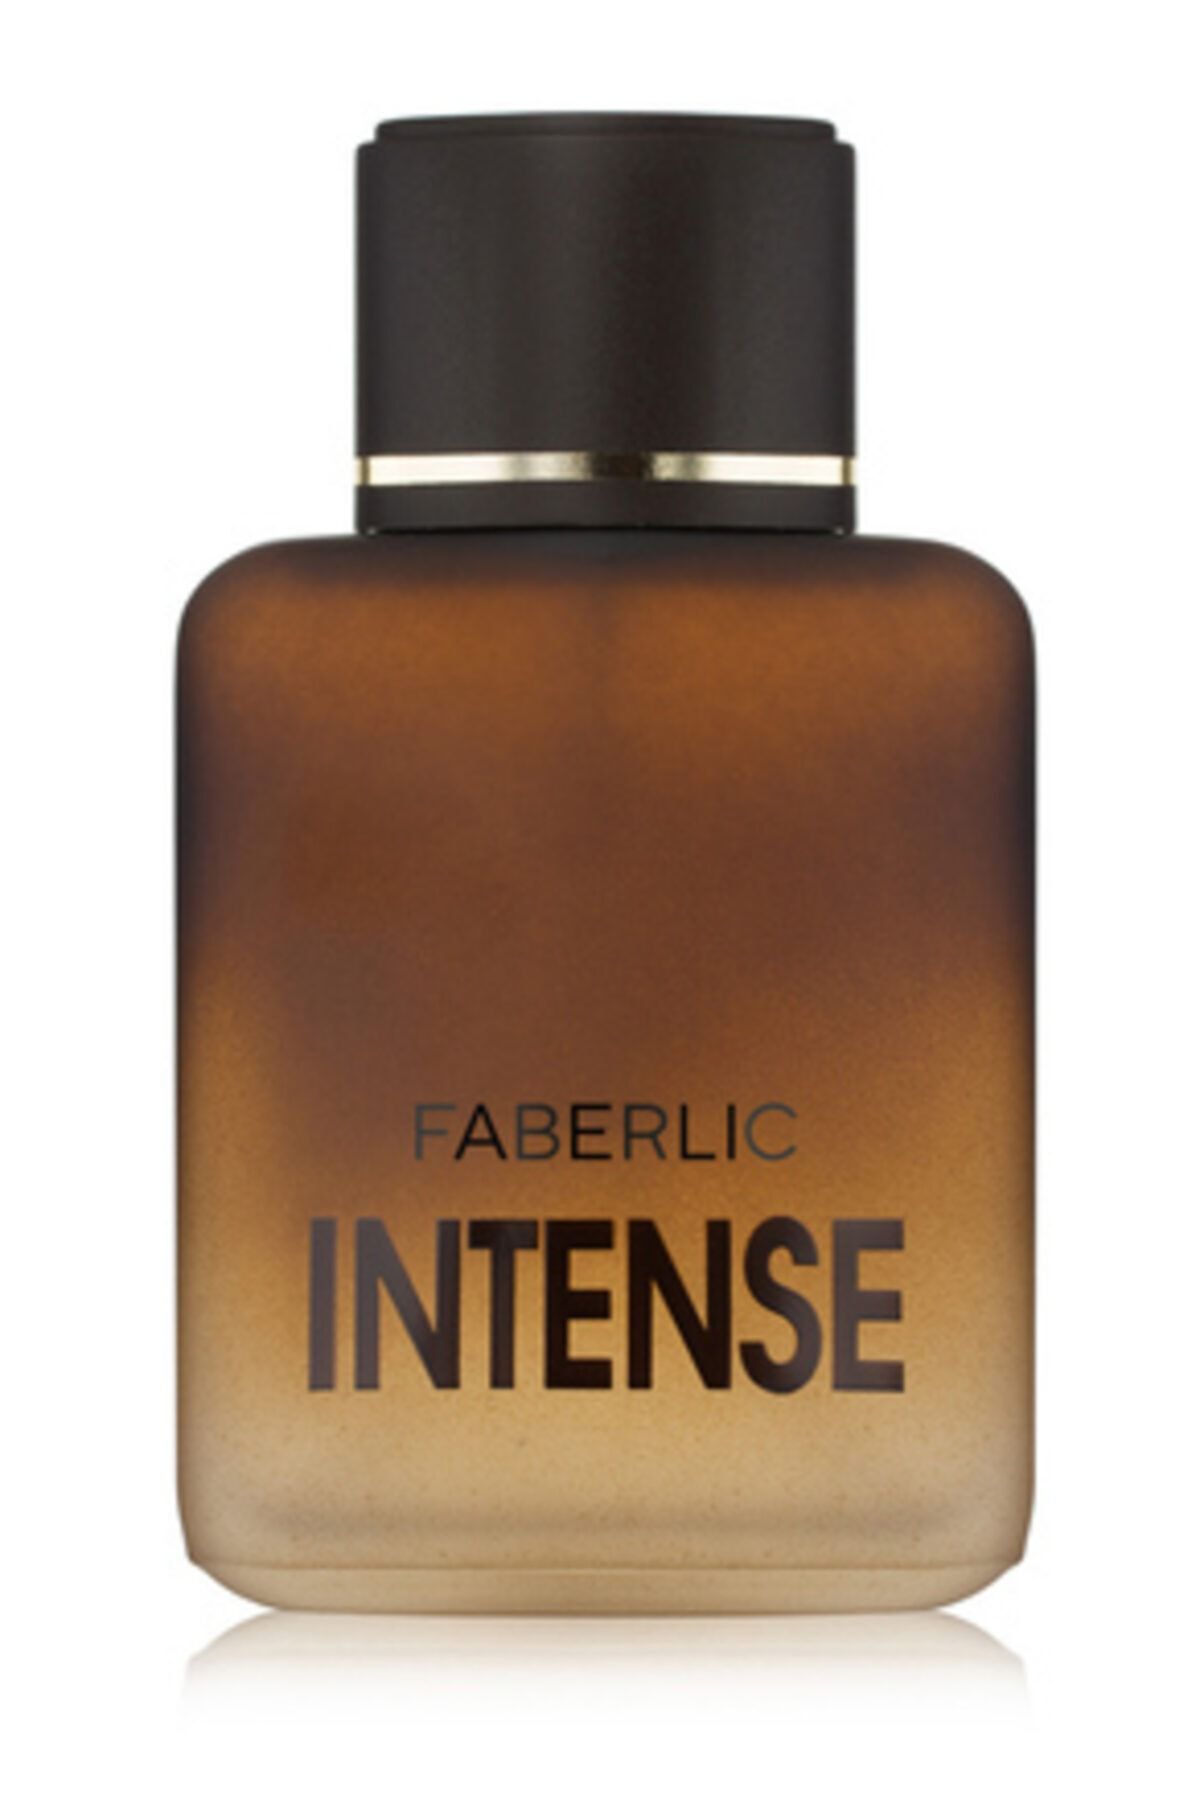 Faberlic Faberlic Intense مردانه ادوتویلت 100 ml